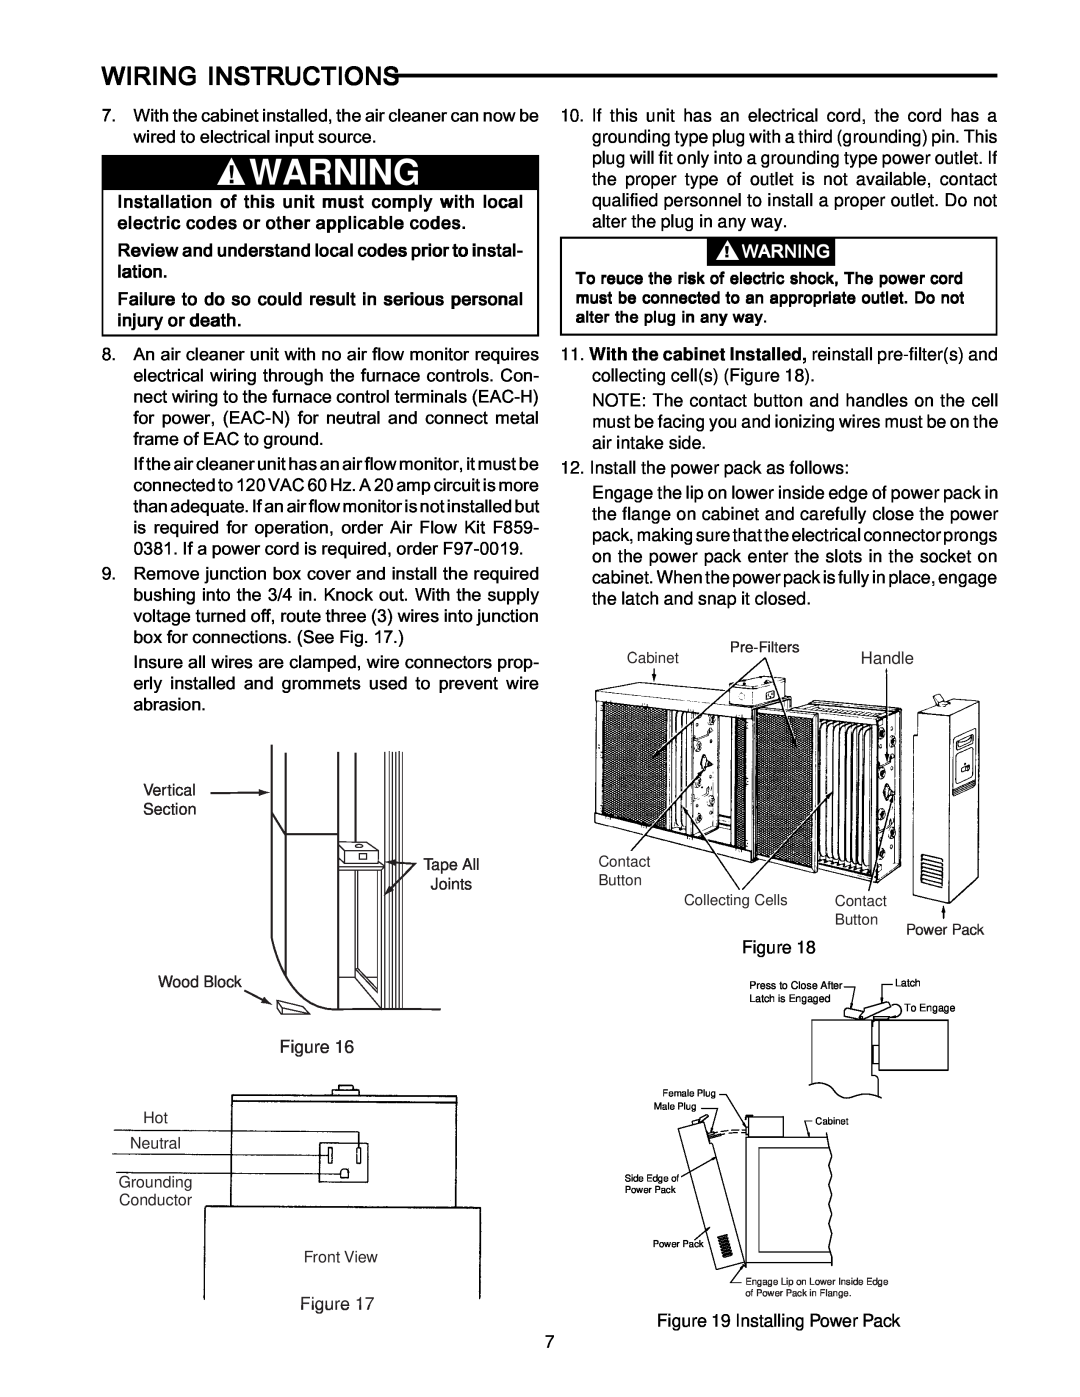 Emerson SST1600, SST1000, SST2000, SST1400 manual Wiring Instructions 